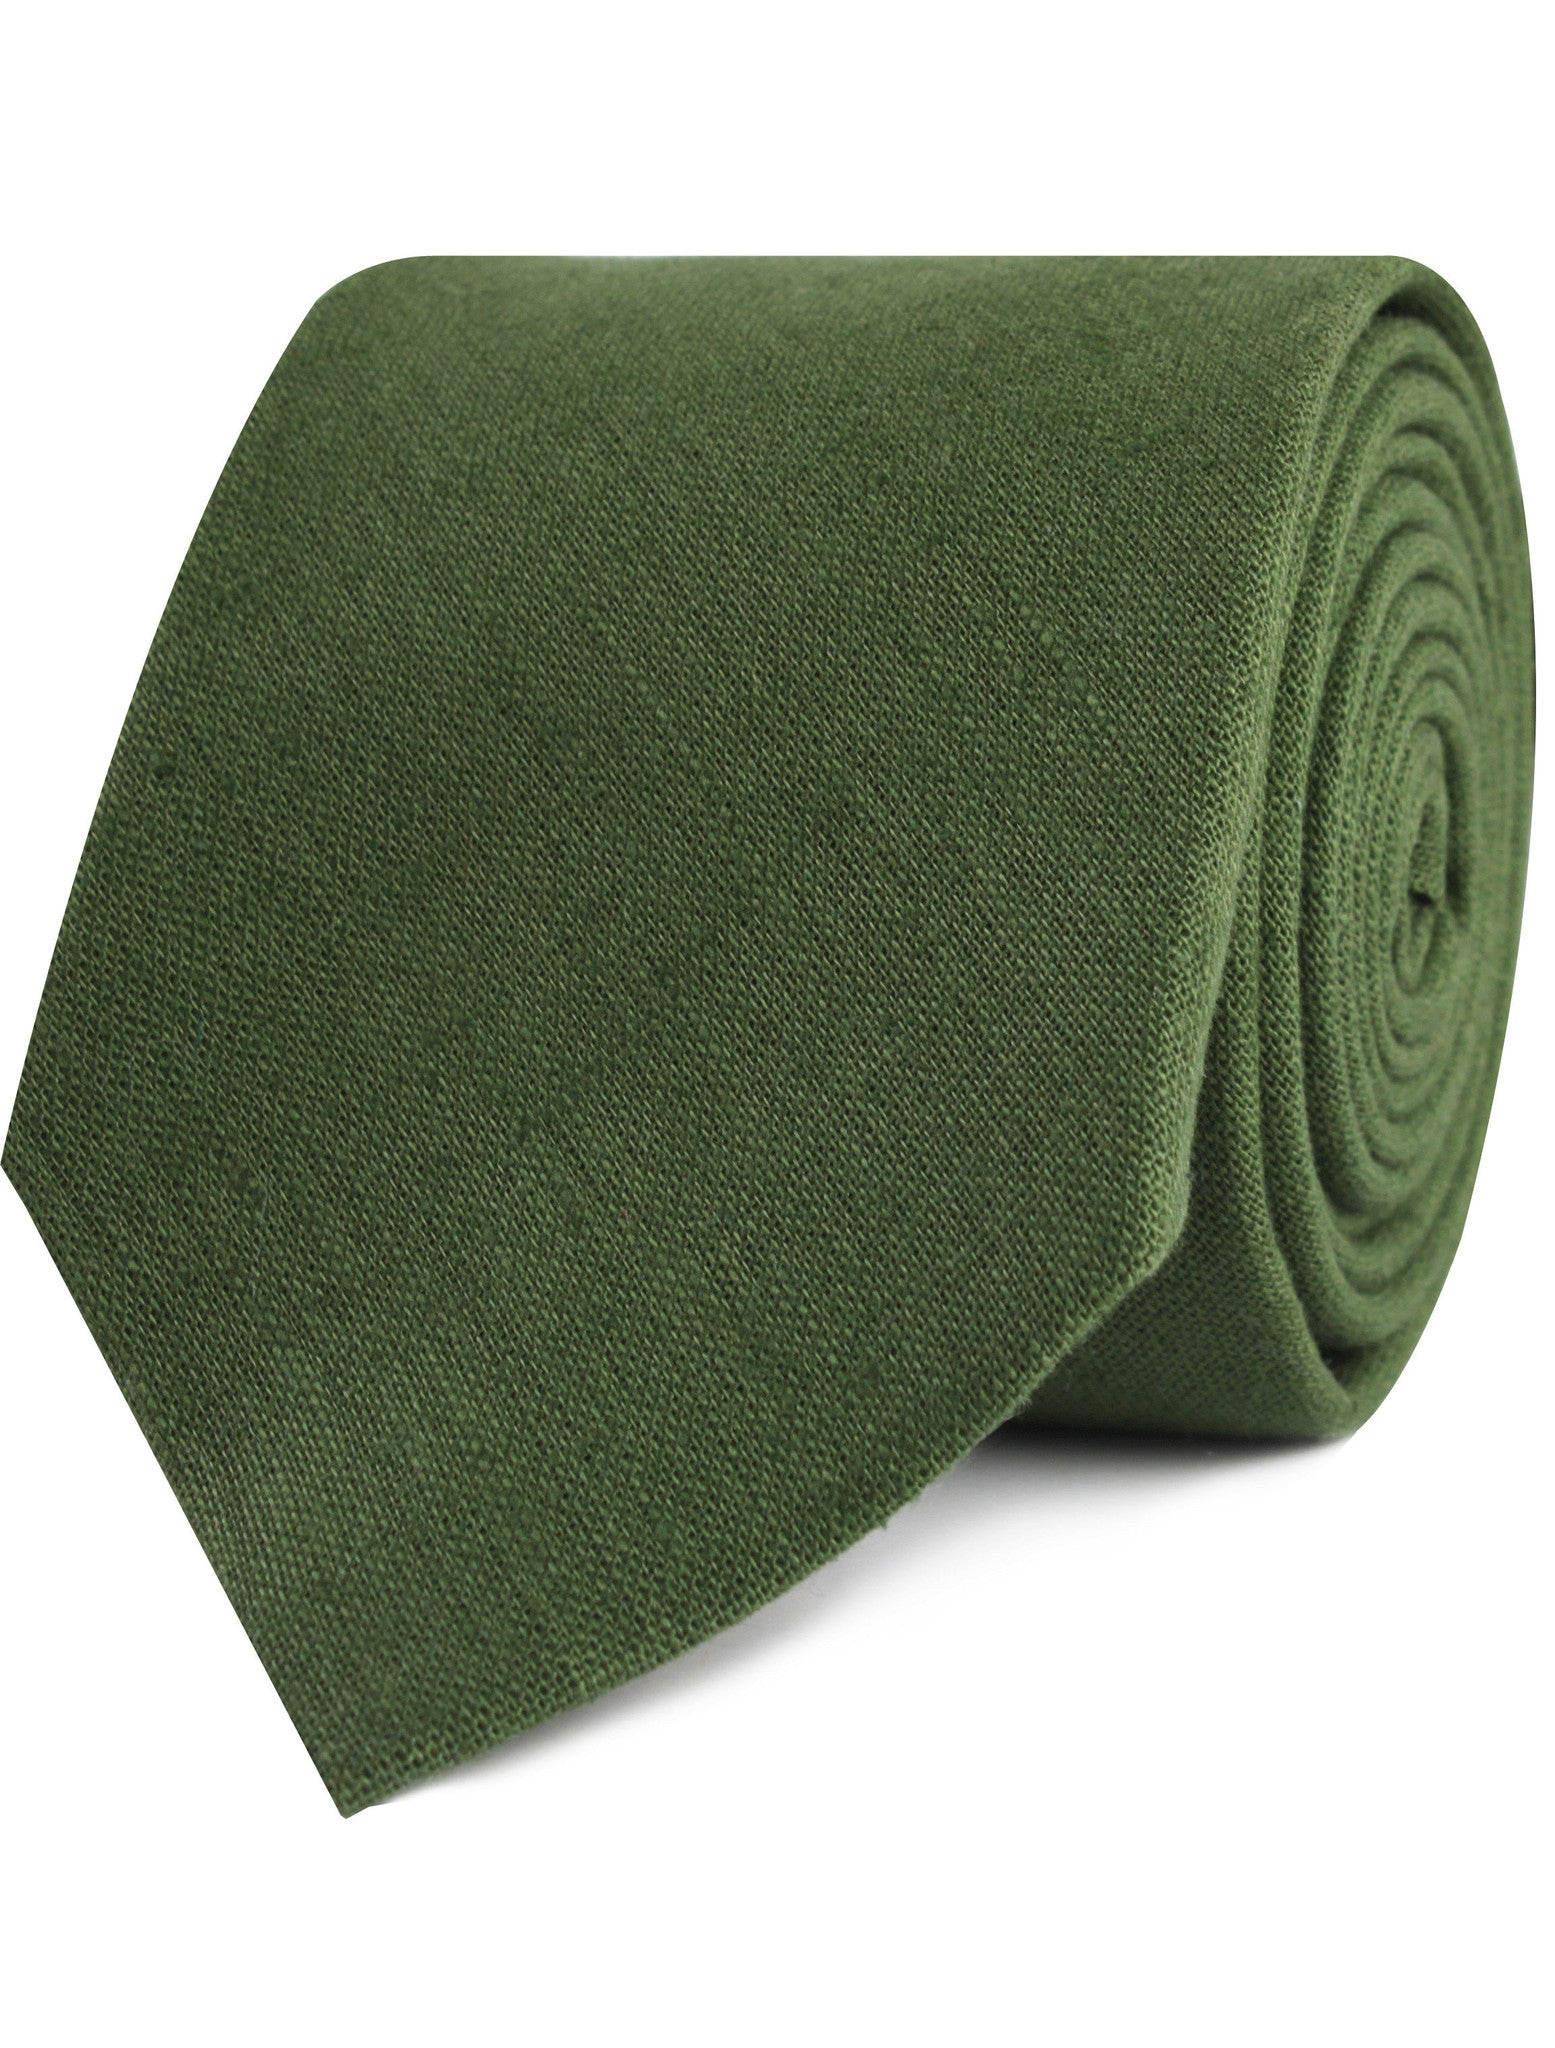 Hunter Green Slub Linen Tie | Mens Tie Ties Neckties | OTAA